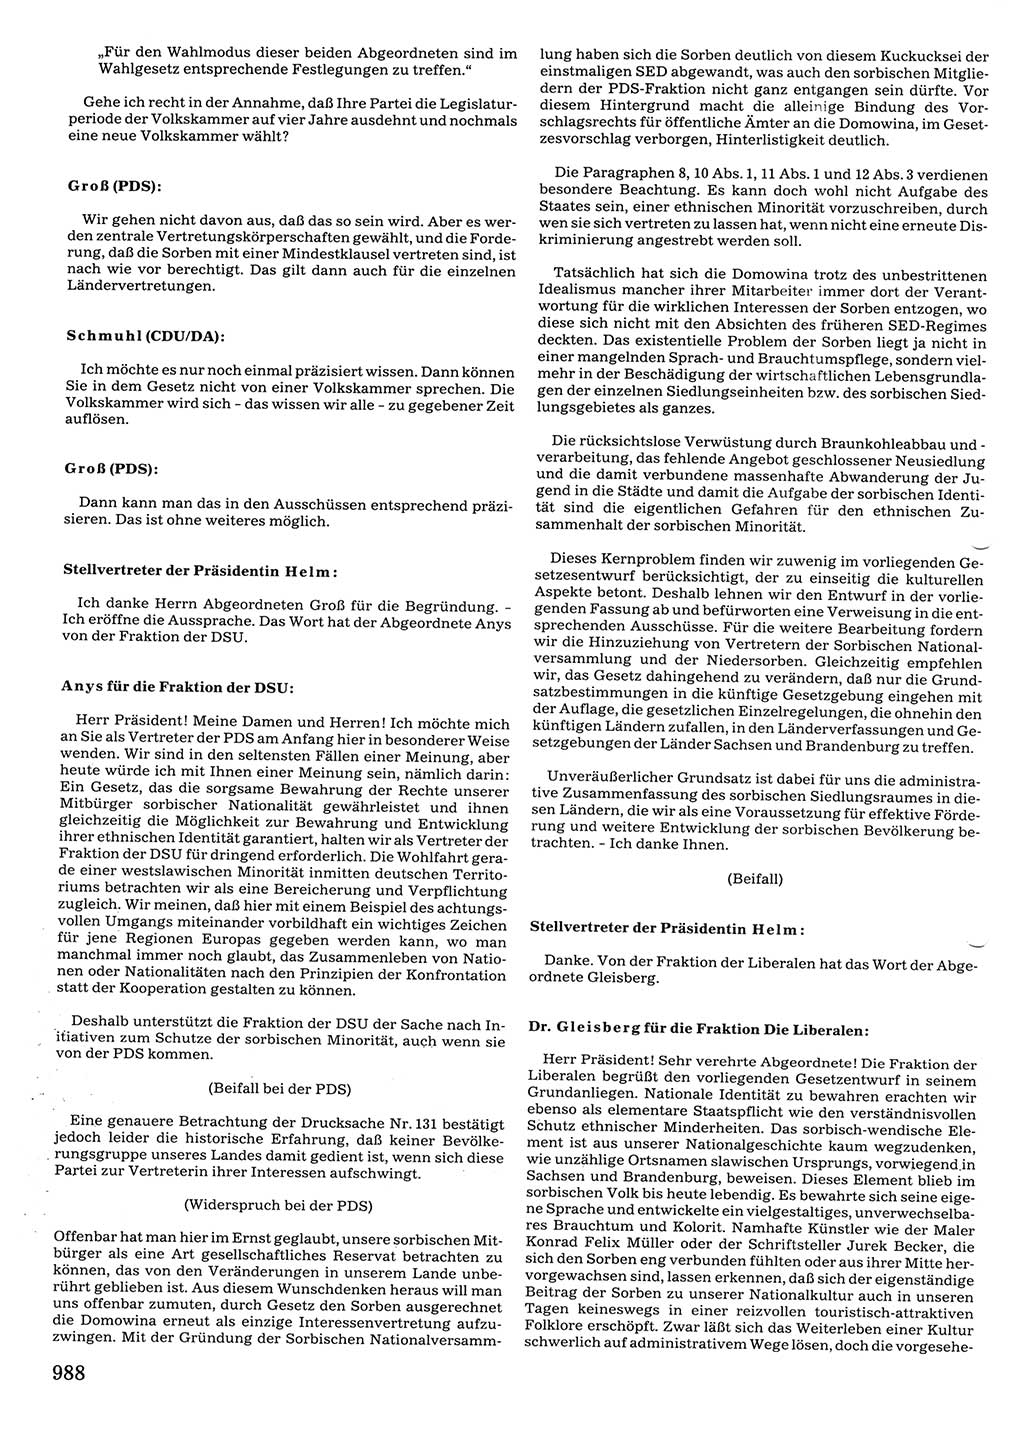 Tagungen der Volkskammer (VK) der Deutschen Demokratischen Republik (DDR), 10. Wahlperiode 1990, Seite 988 (VK. DDR 10. WP. 1990, Prot. Tg. 1-38, 5.4.-2.10.1990, S. 988)